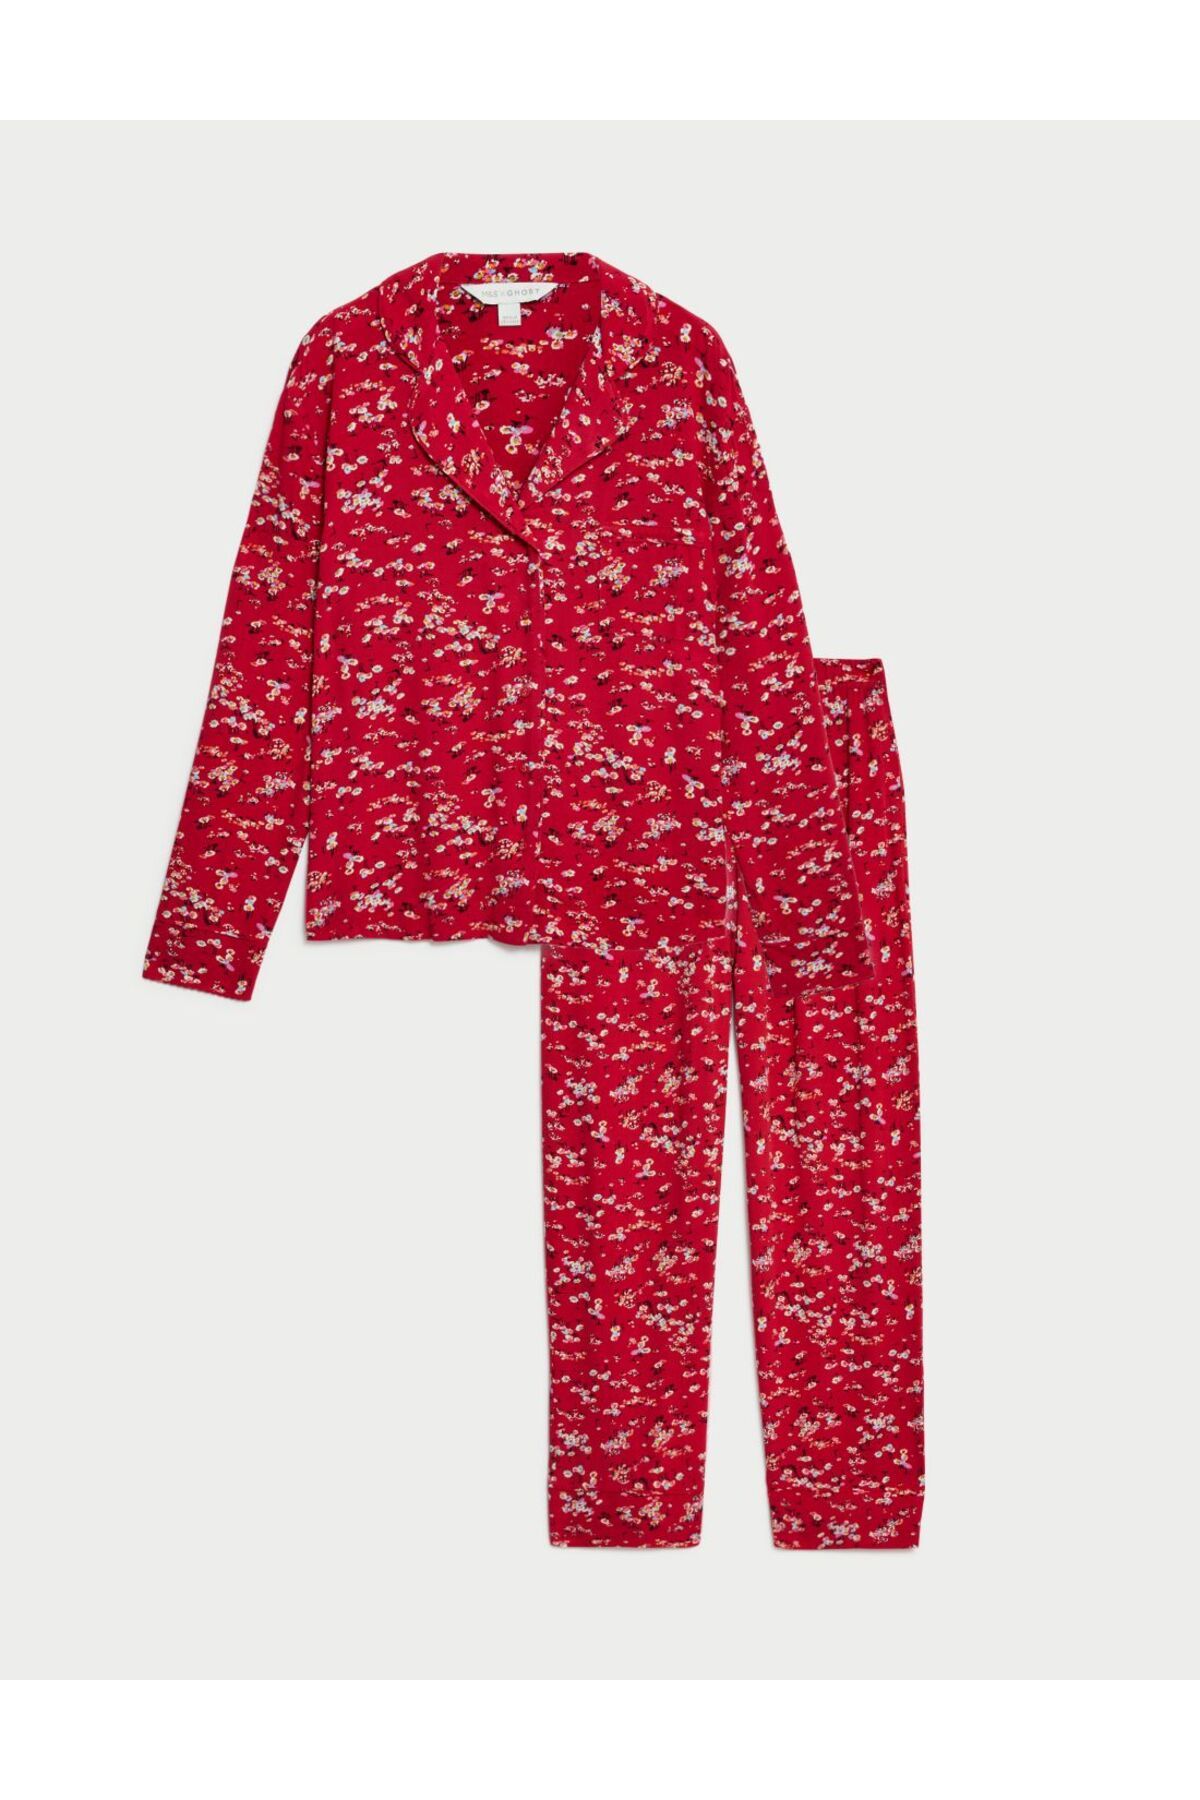 Marks & Spencer Tammy Çiçek Desenli Uzun Kollu Pijama Takımı